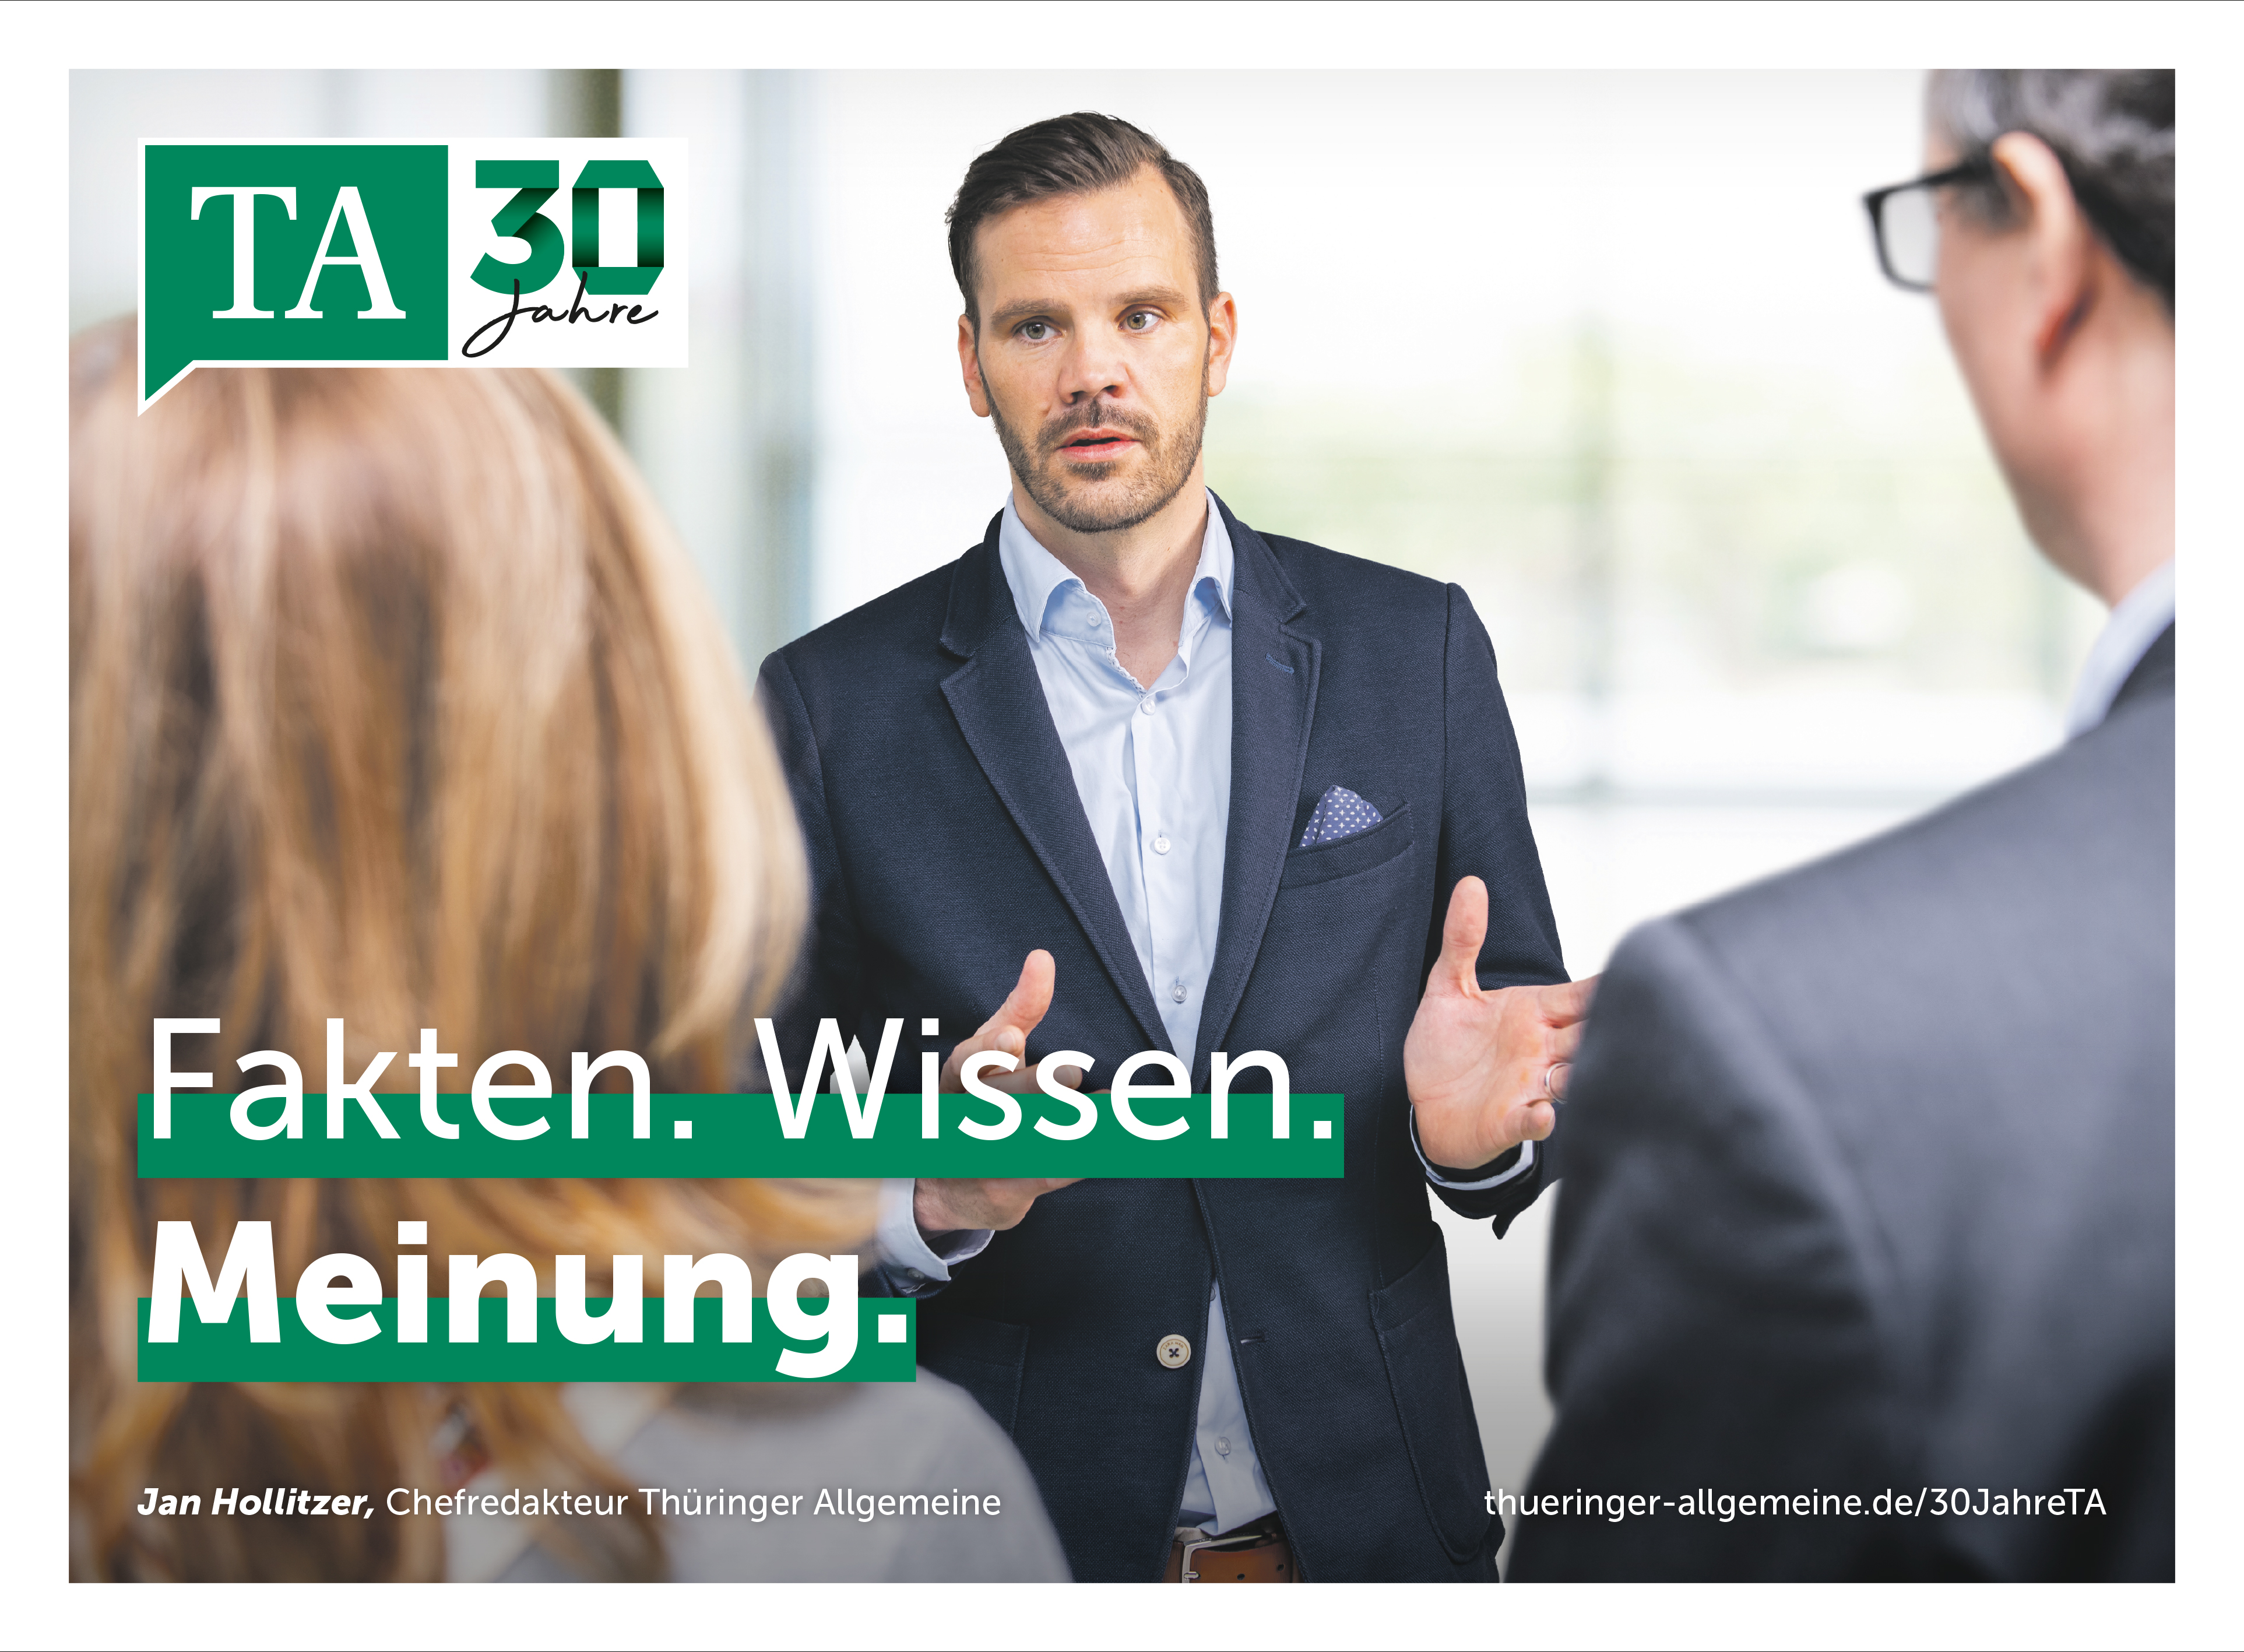 Die Thringer Allgemeine positioniert sich in der aktuellen Imagekampagne zum 30-jhrigen Bestehen persnlich und kompetent. (BIld: TA)